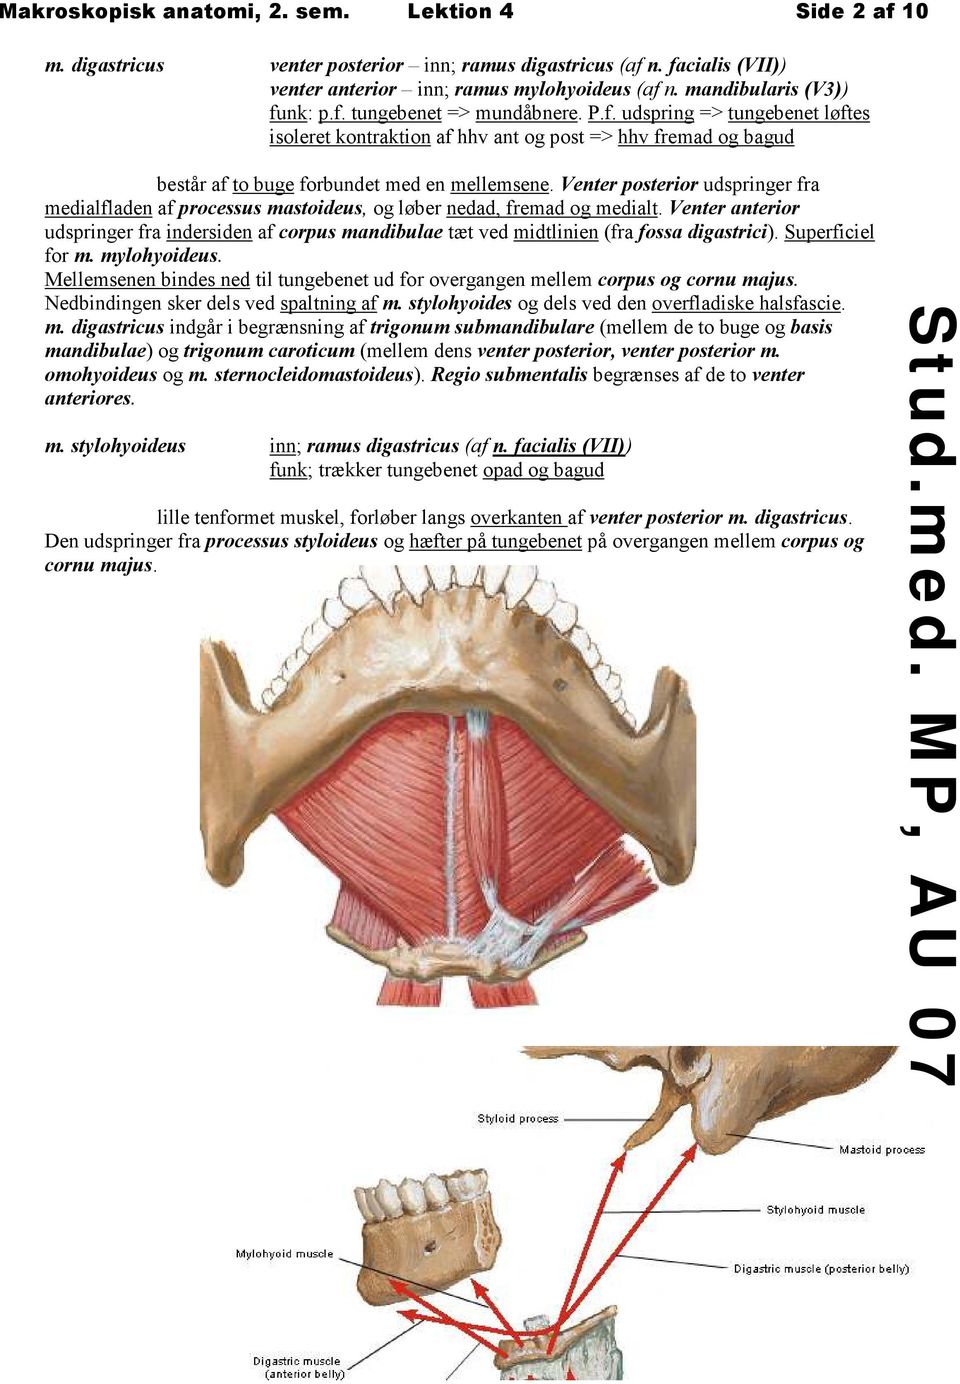 Venter posterior udspringer fra medialfladen af processus mastoideus, og løber nedad, fremad og medialt.